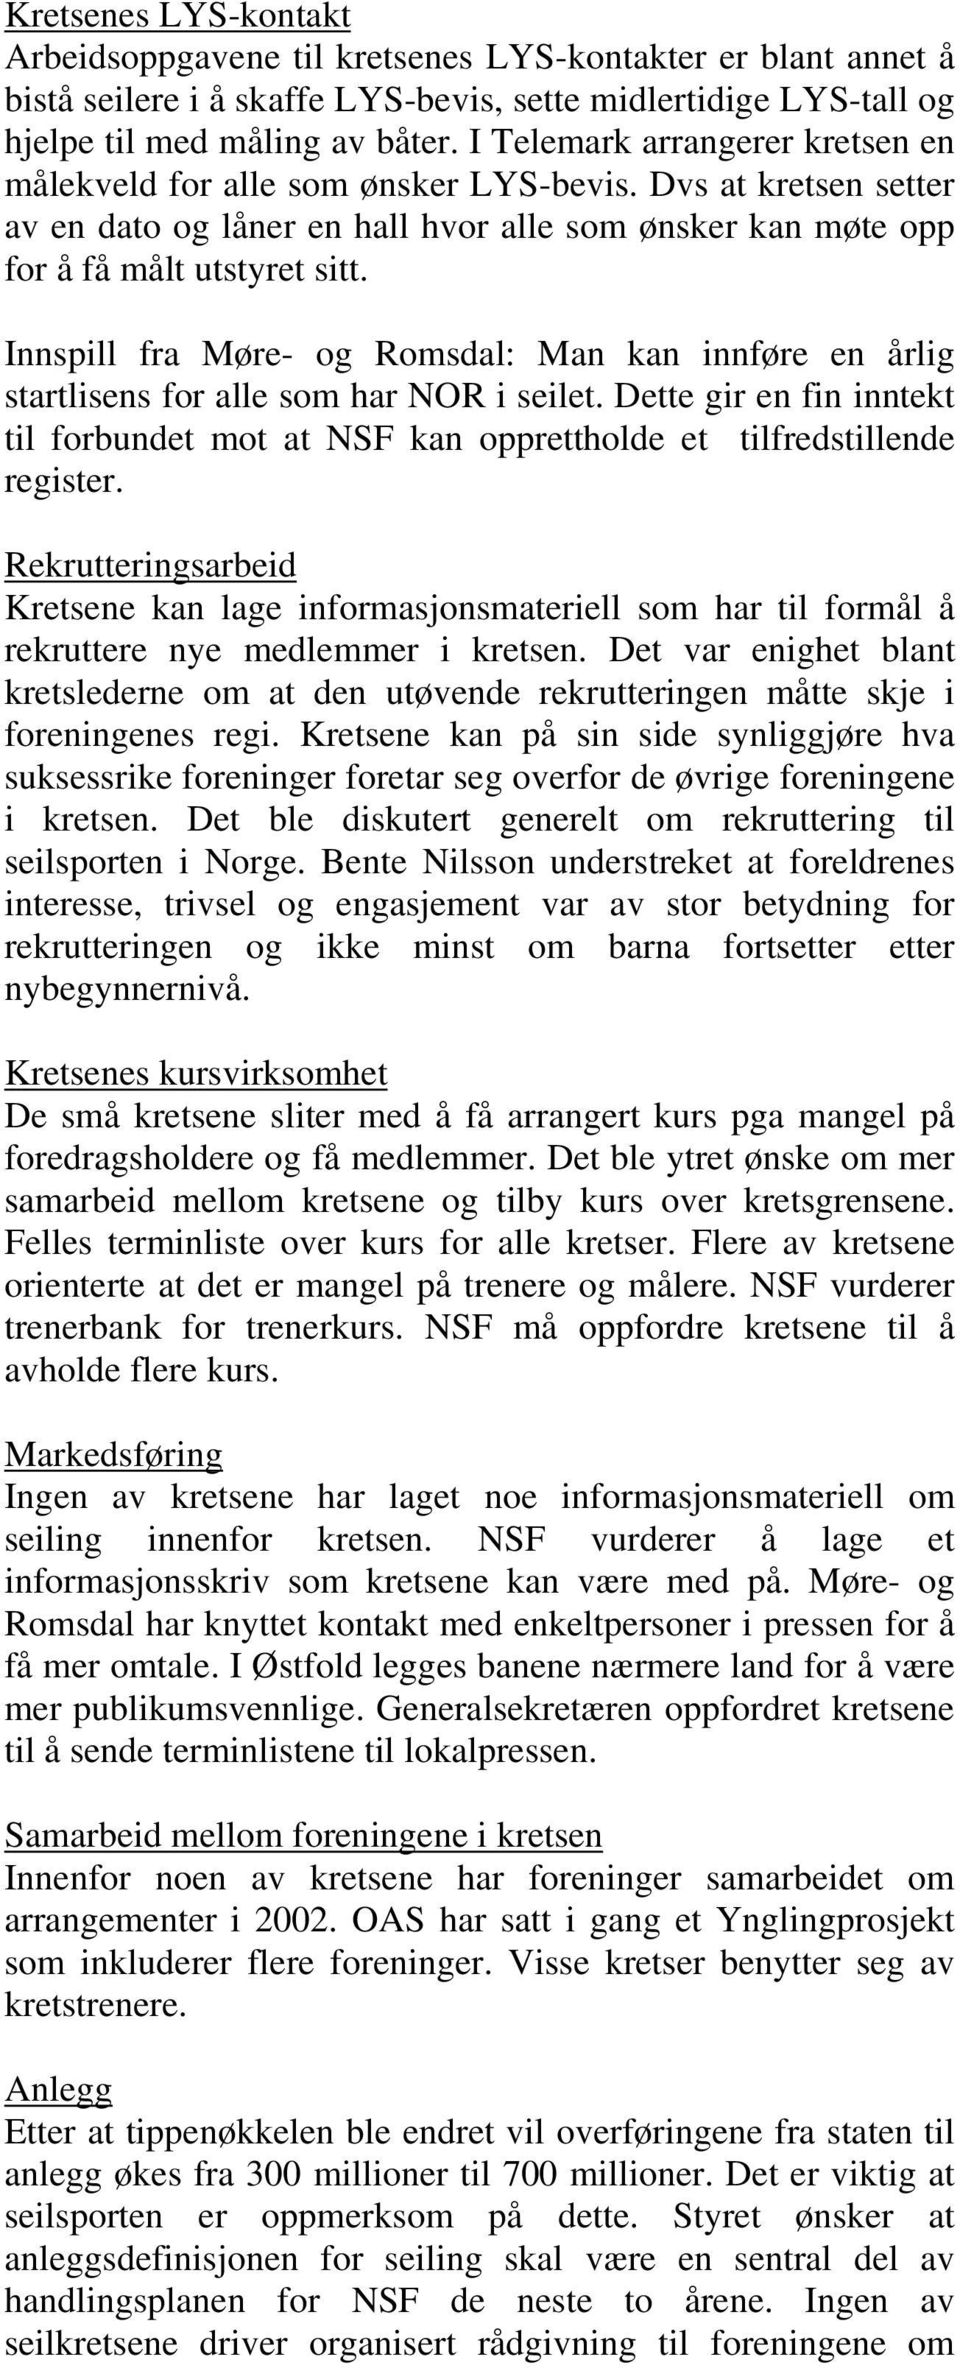 Innspill fra Møre- og Romsdal: Man kan innføre en årlig startlisens for alle som har NOR i seilet. Dette gir en fin inntekt til forbundet mot at NSF kan opprettholde et tilfredstillende register.